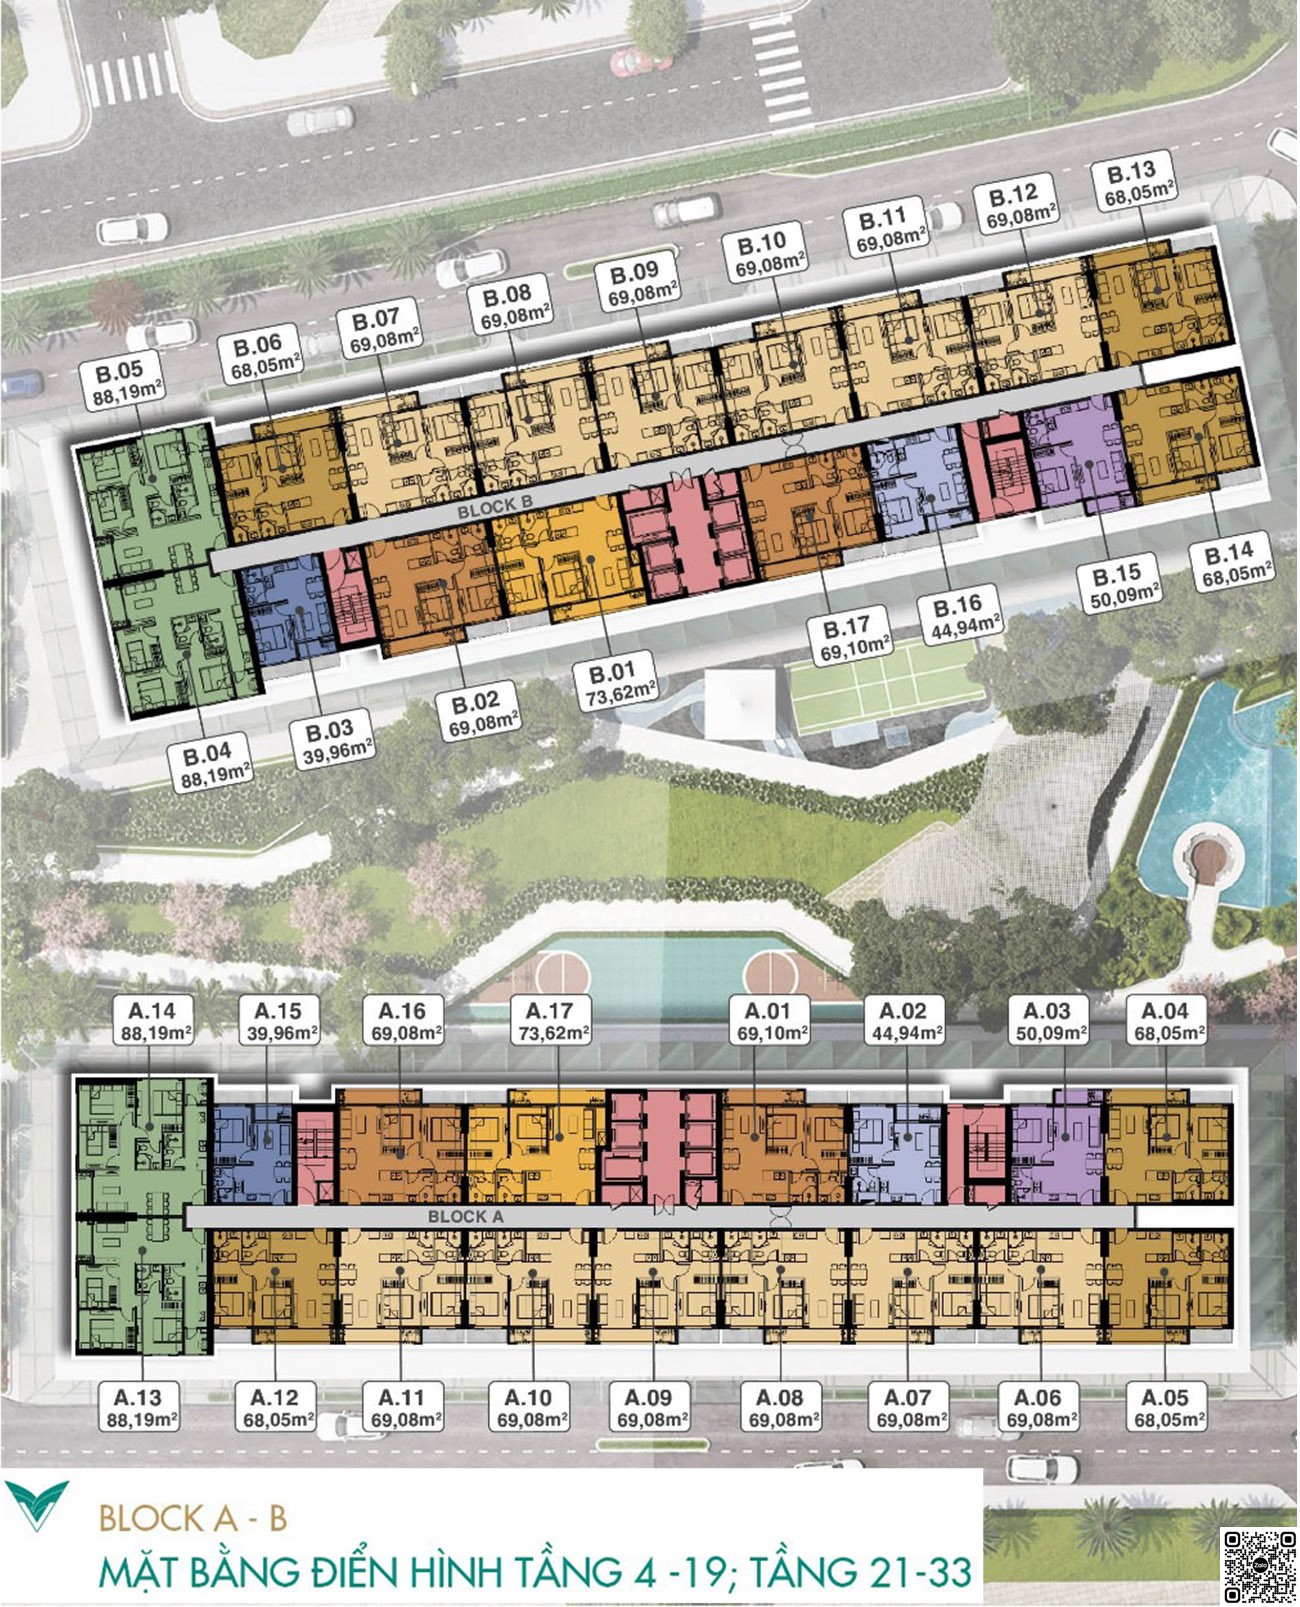 Mặt bằng tầng 4-19 và tầng 21-33 Block A, B, C dự án Lavita Thuận An